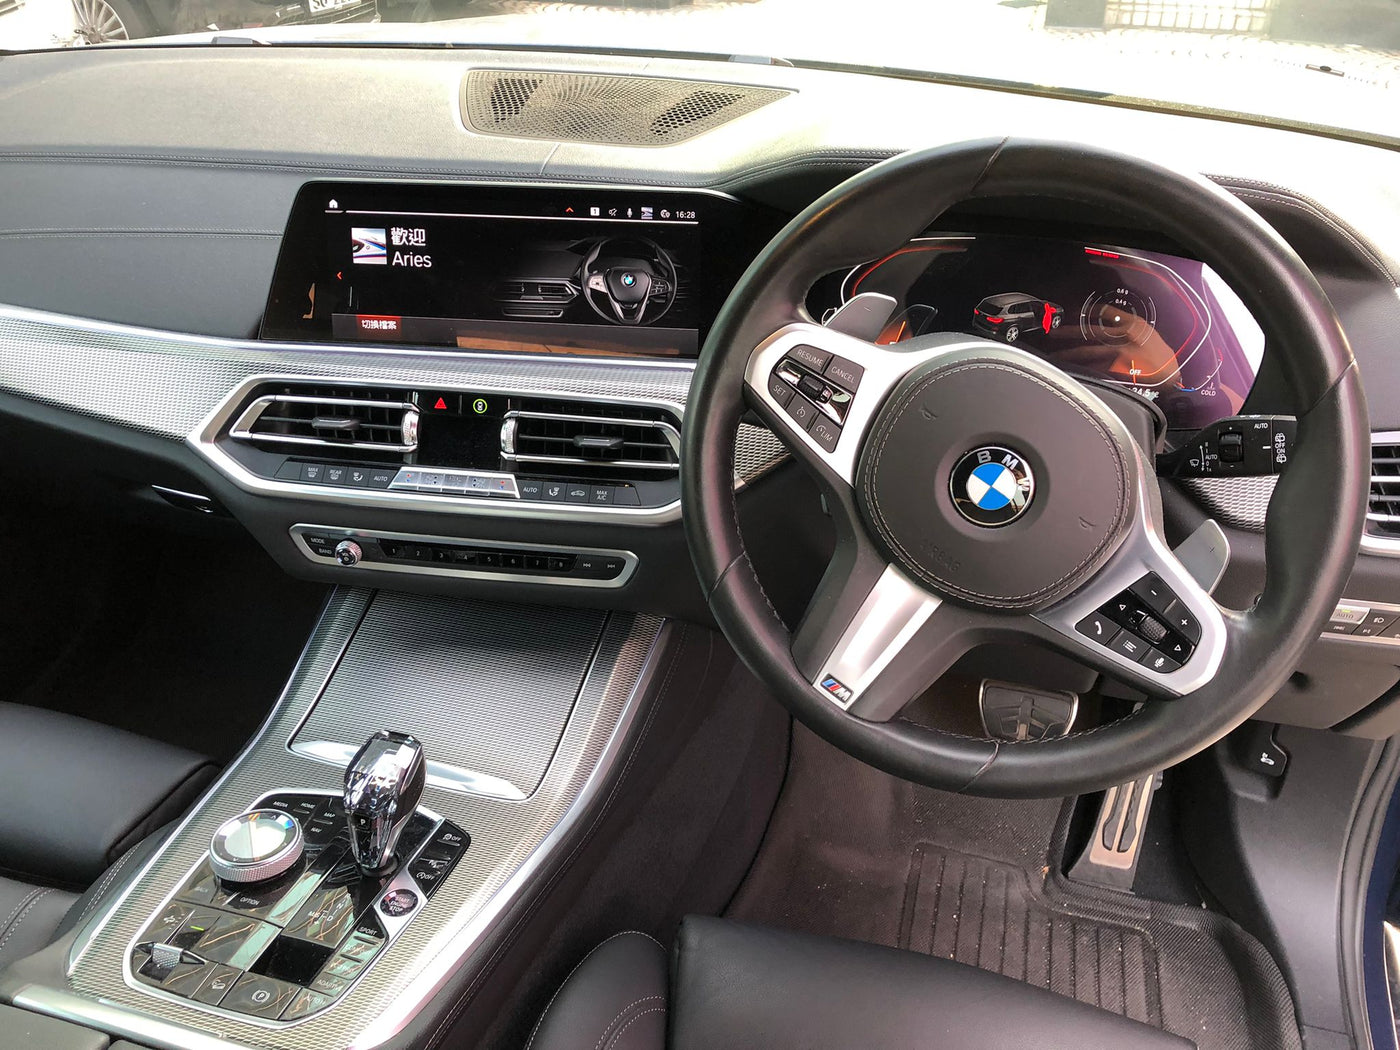 BMW X5 XDrive40iA X Line M Sport 2019